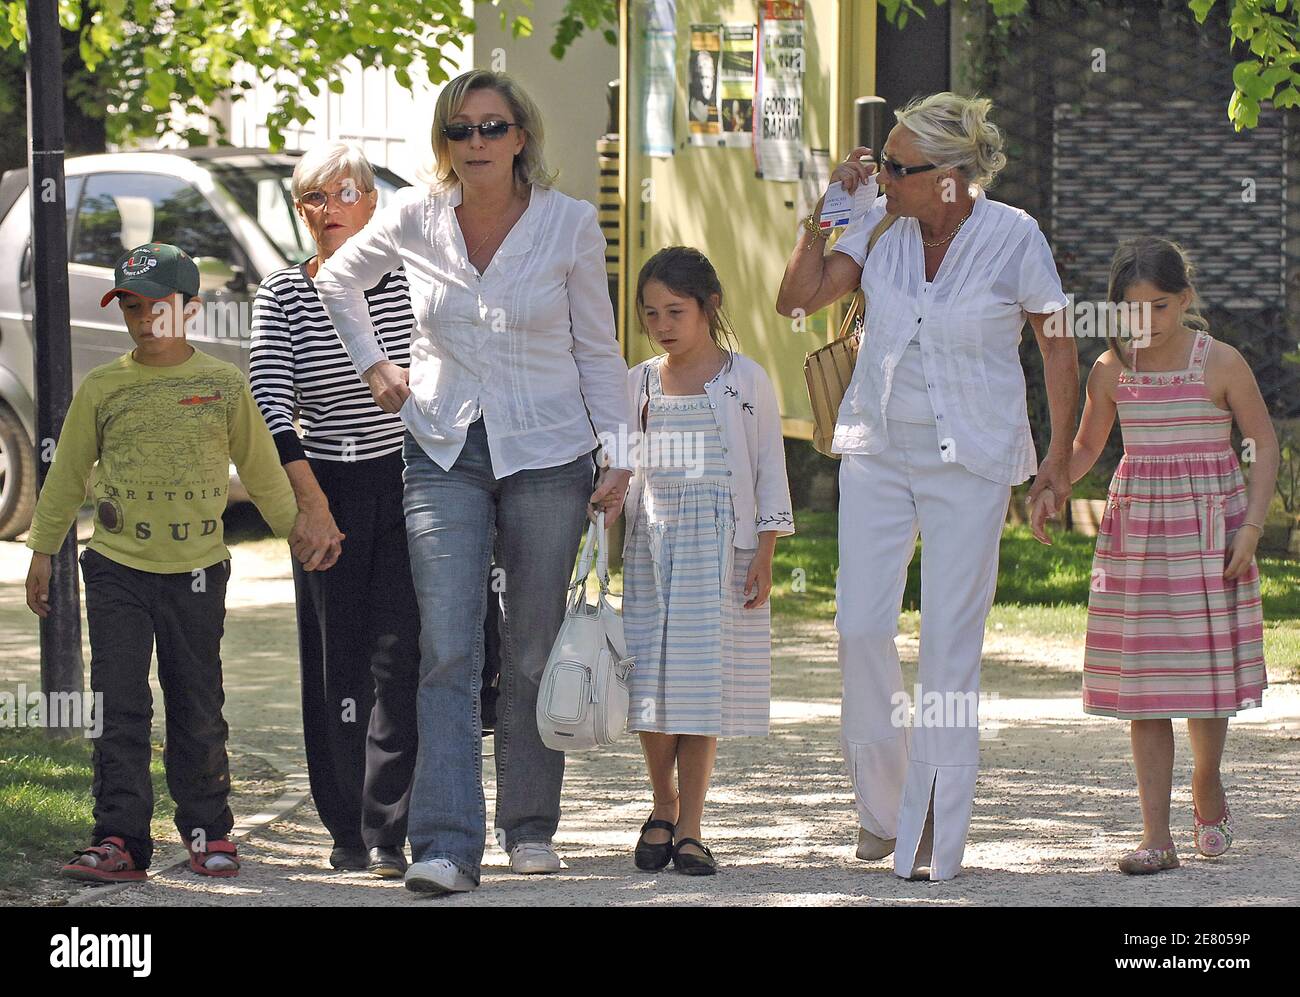 Veuillez cacher les visages des enfants avant la publication Marine le Pen,  la fille d'extrême-droite de Jean-Marie le Pen, avec ses enfants Louis,  Mathilde et Jehanne, quitte le bureau de vote après